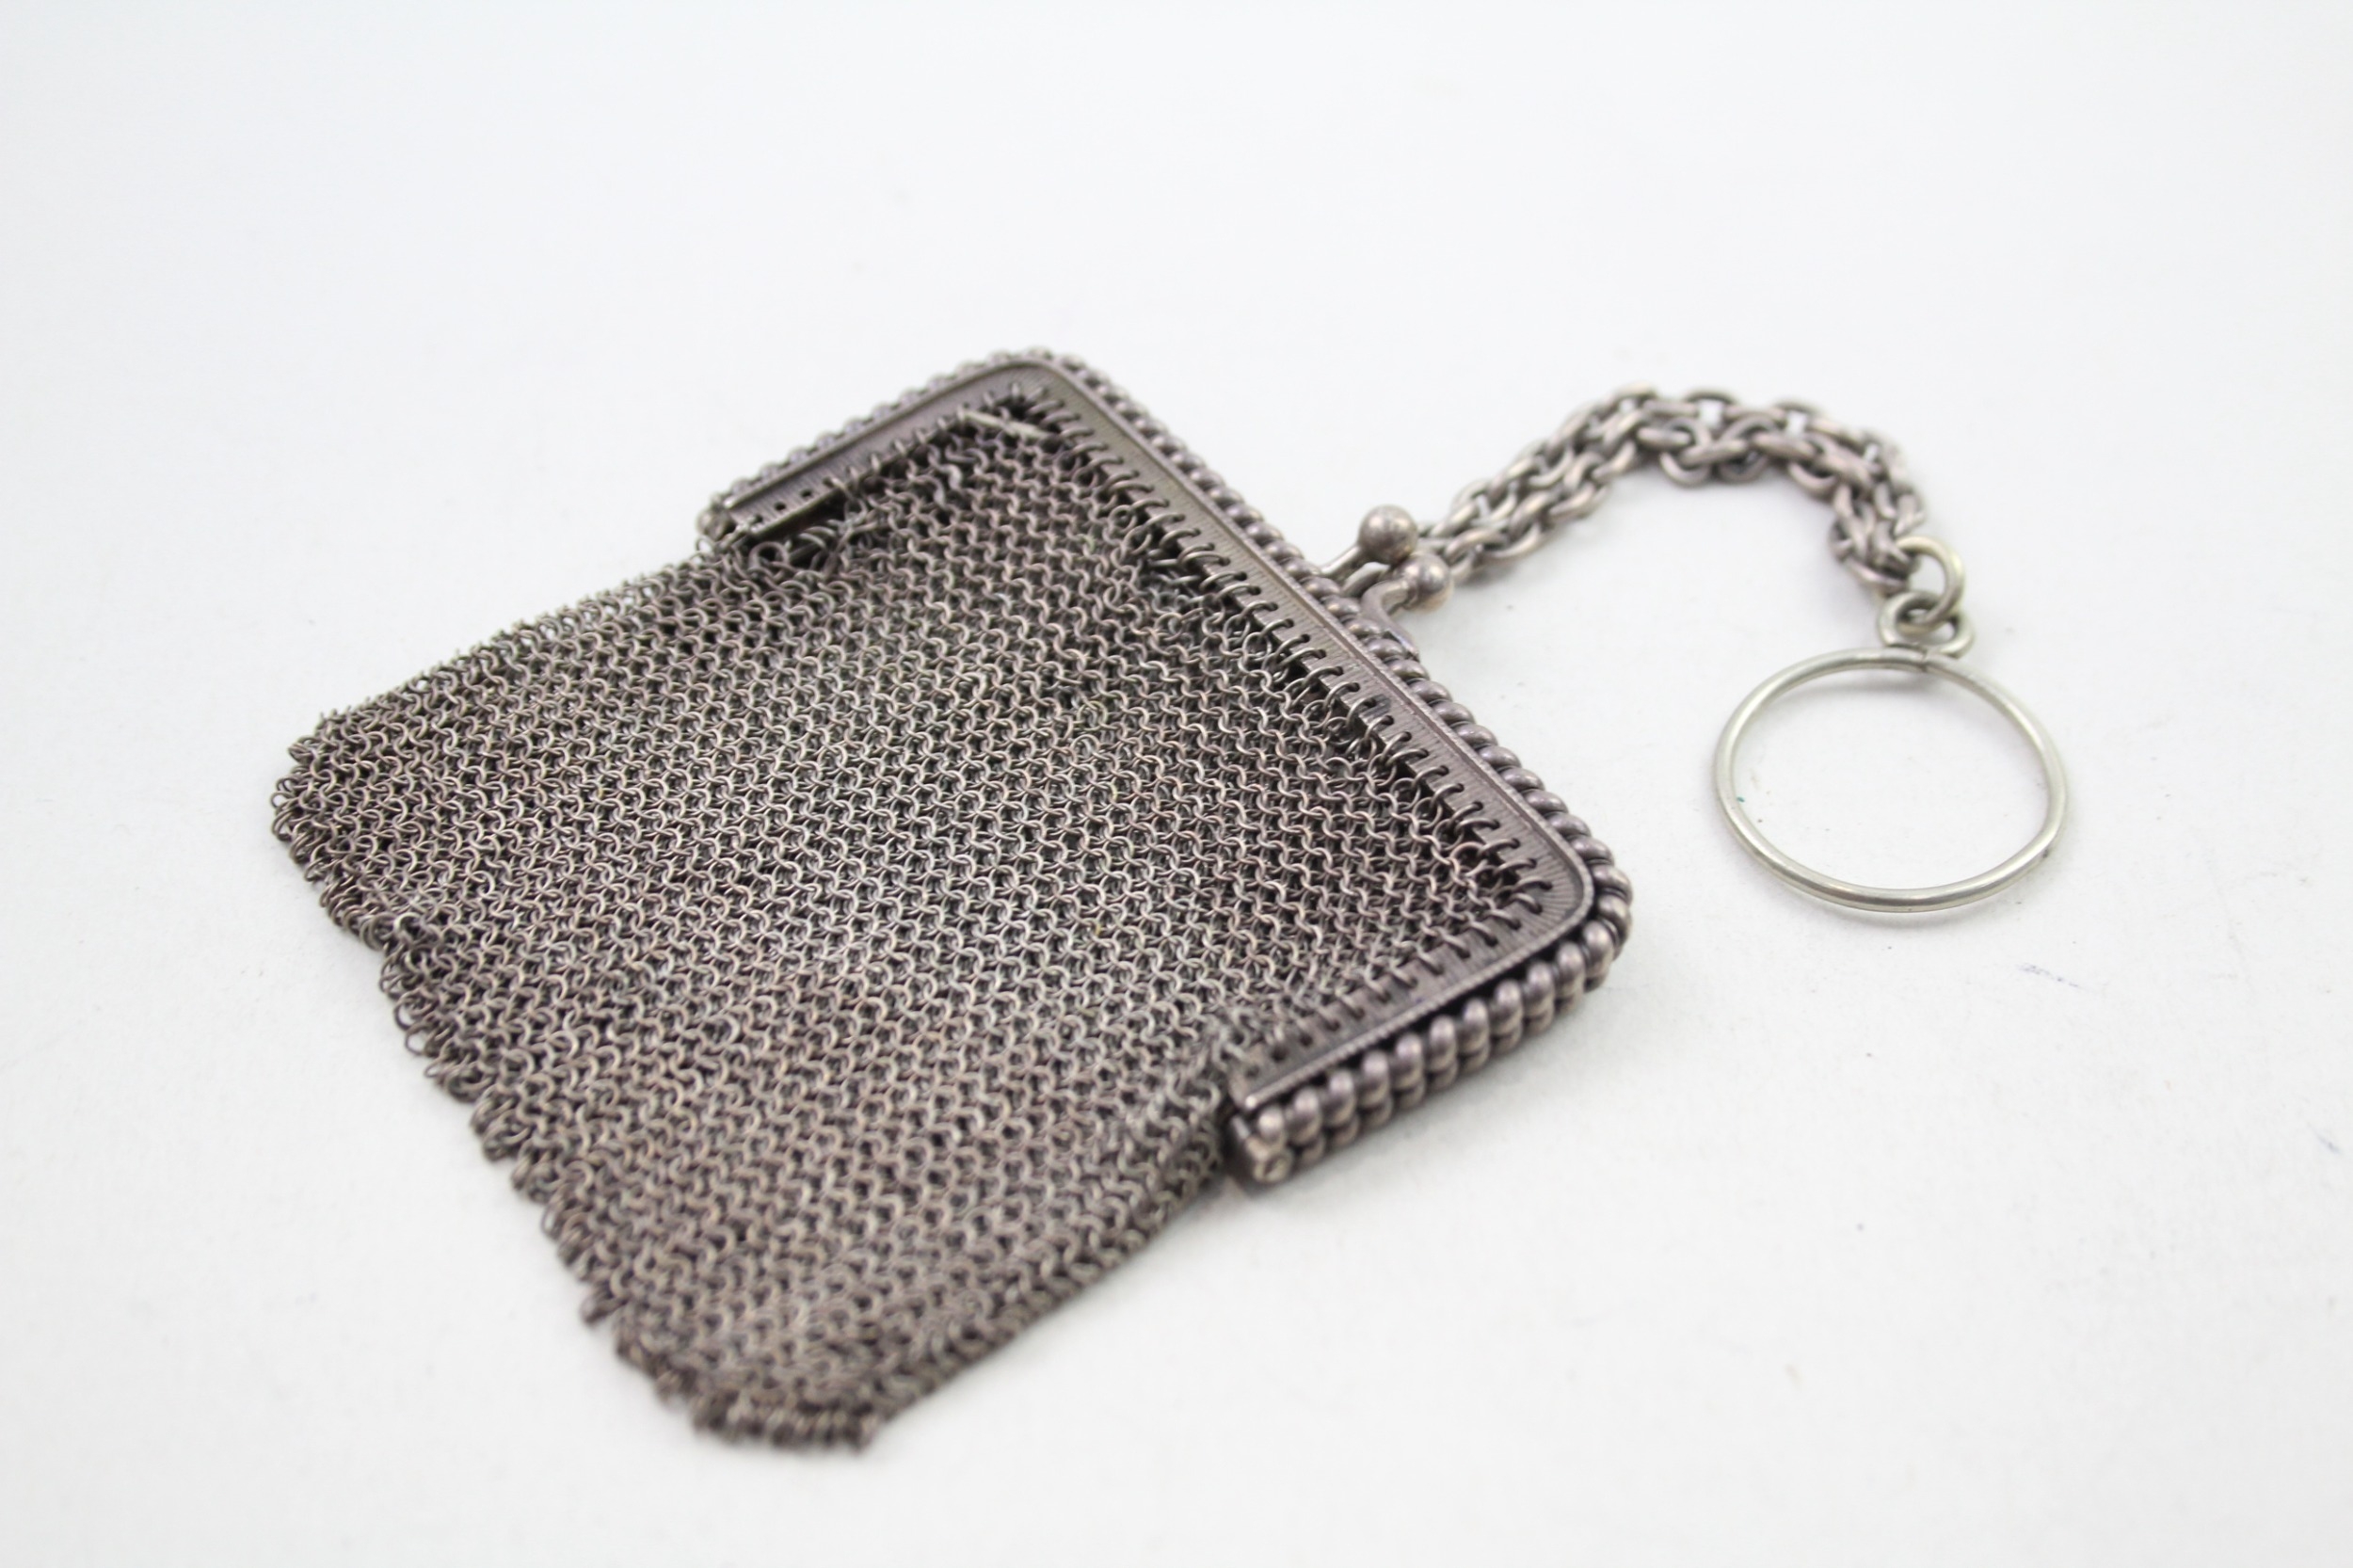 .930 silver chainmail purse / bag